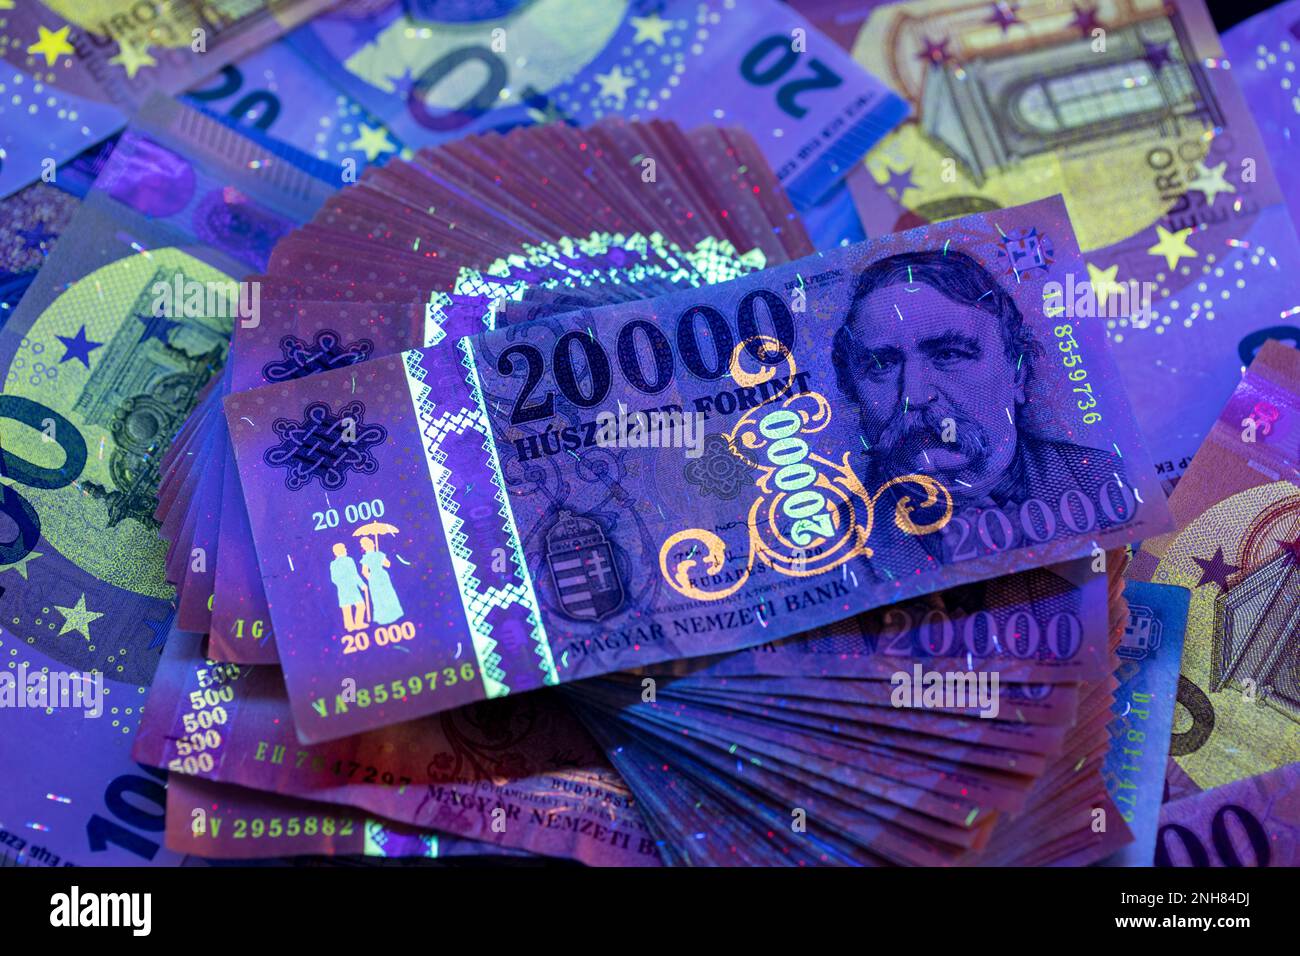 Per verificare l'autenticità del denaro. 20.000 banconote HUF in luce UV, banconote in euro sullo sfondo. L'immagine potrebbe contenere rumore e grana. Foto Stock